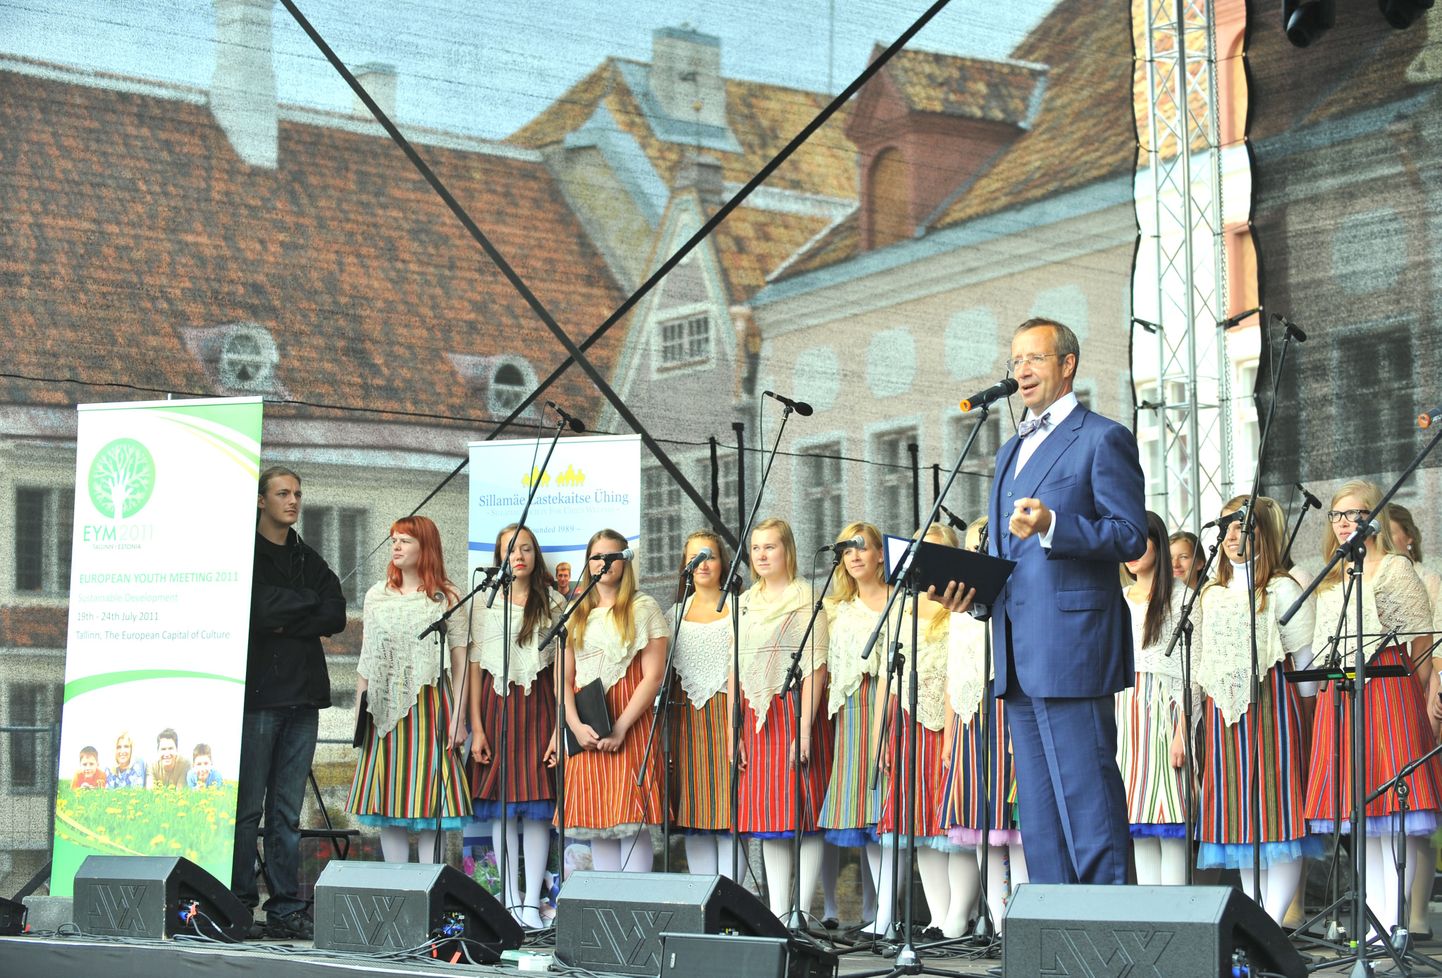 «Euroopa Noorte Kohtumine 2011: Jätkusuutlik Areng» avamine Tallinnas Raekoja platsil.